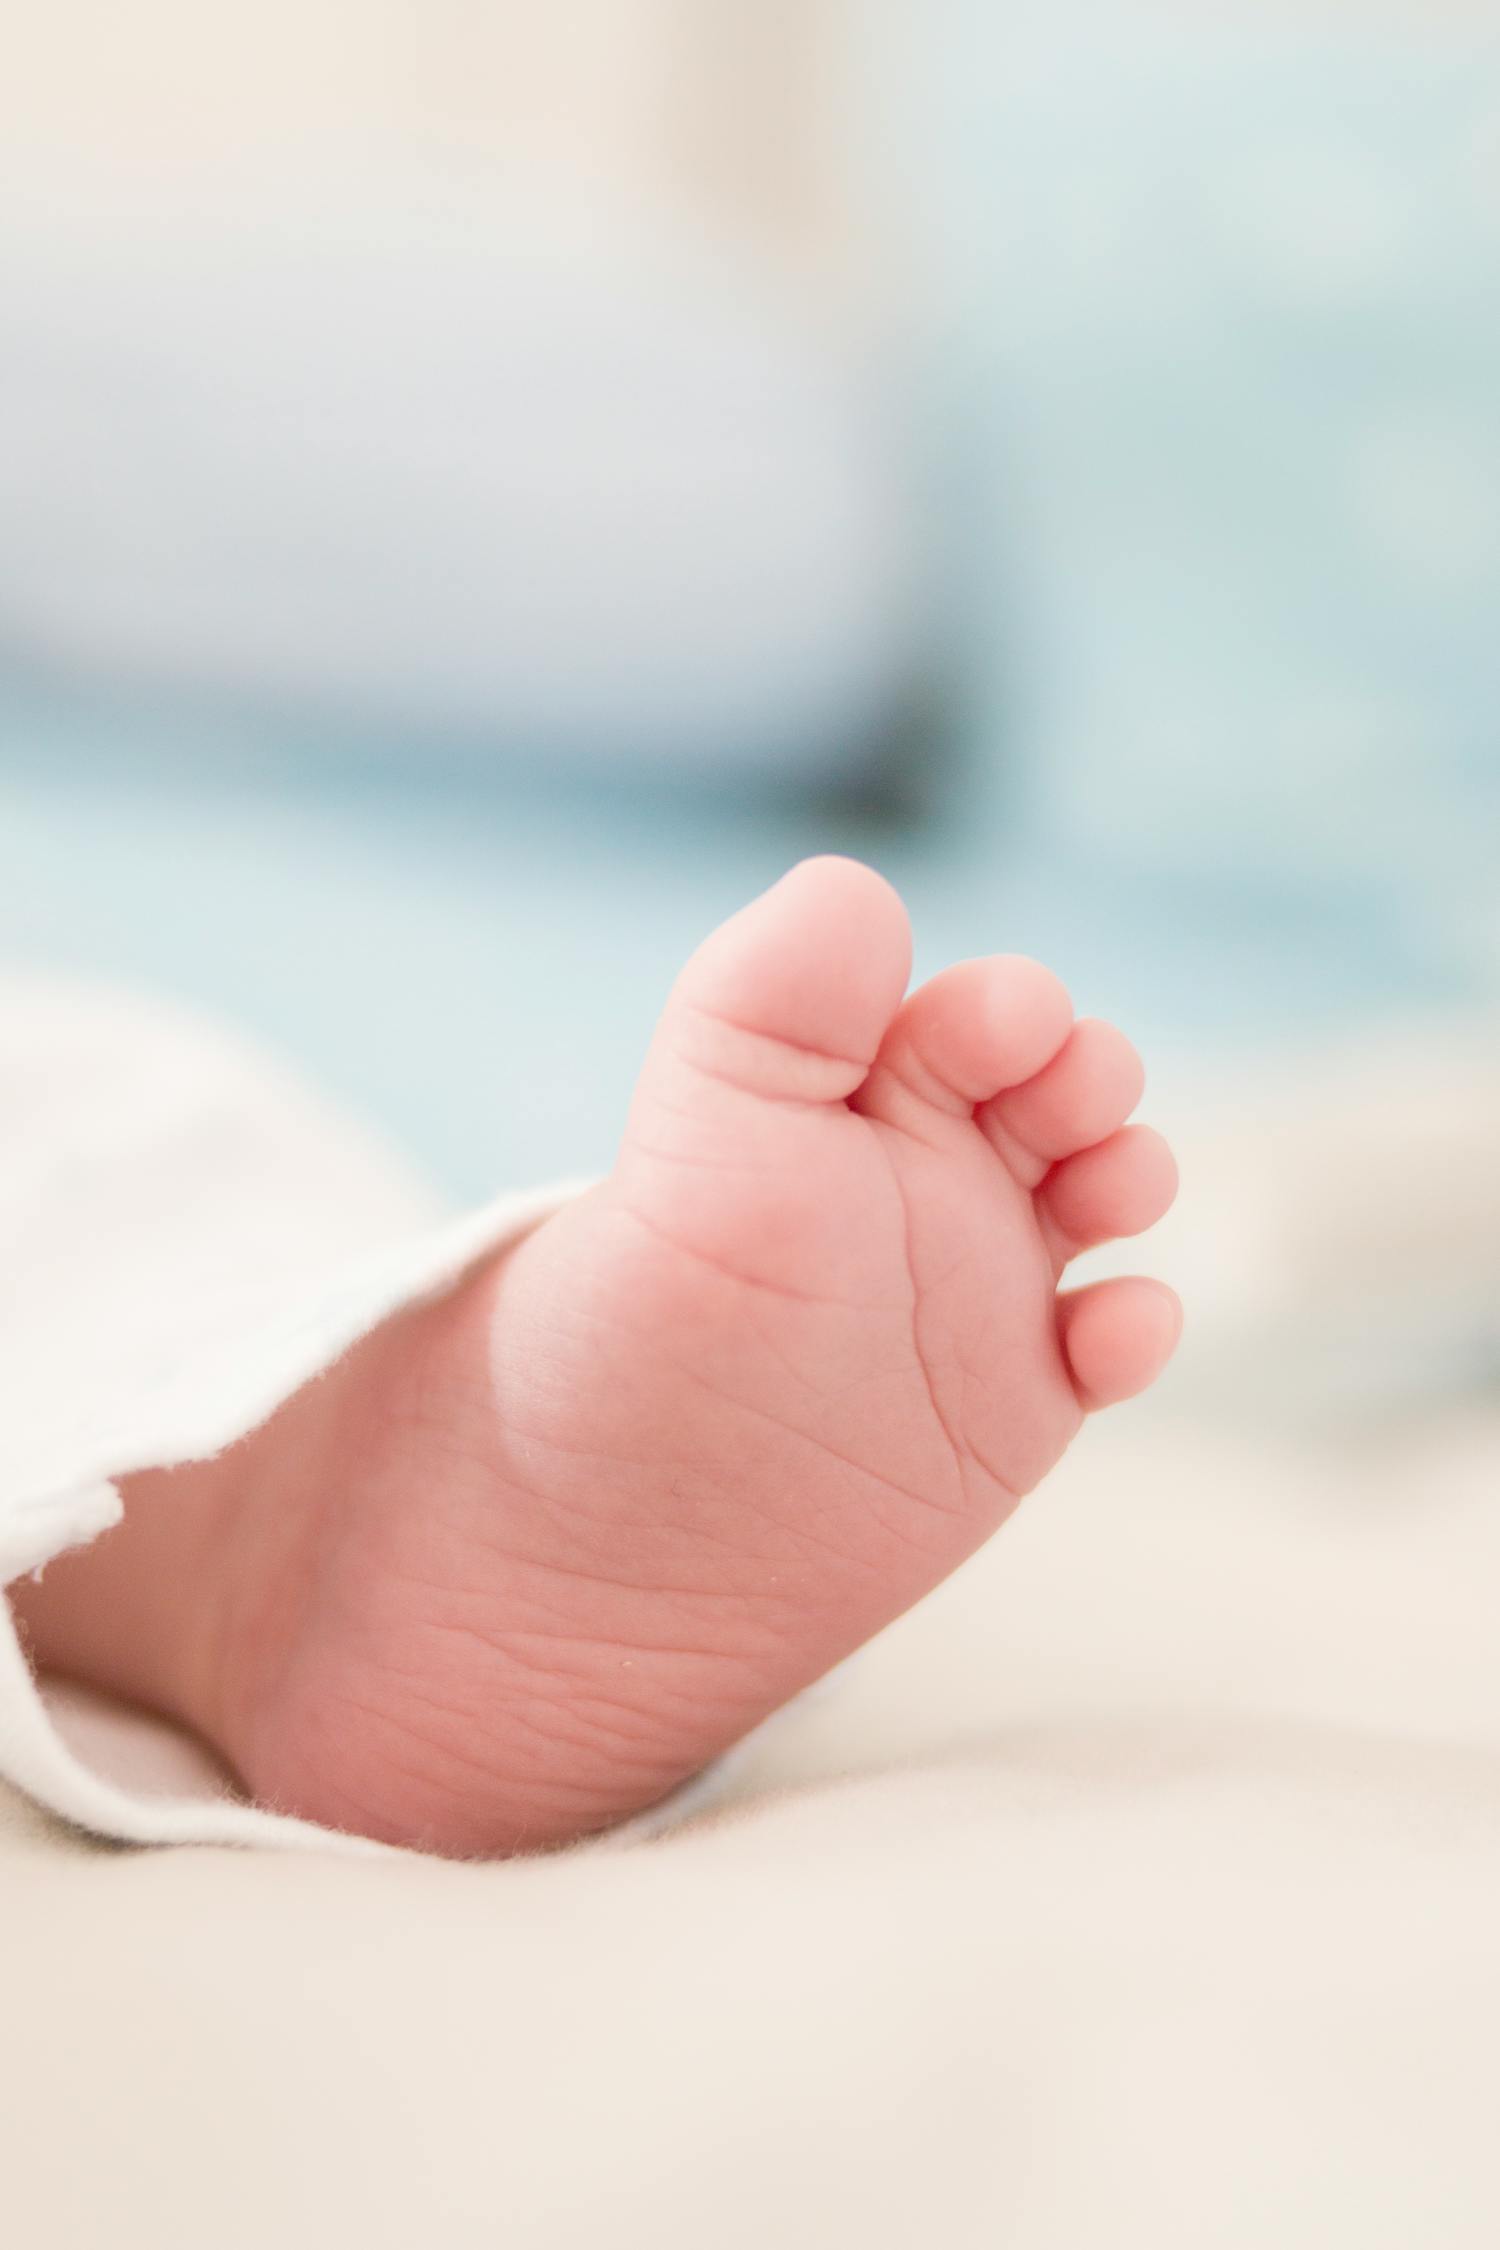 脚 婴儿 儿童 - Pixabay上的免费照片 - Pixabay